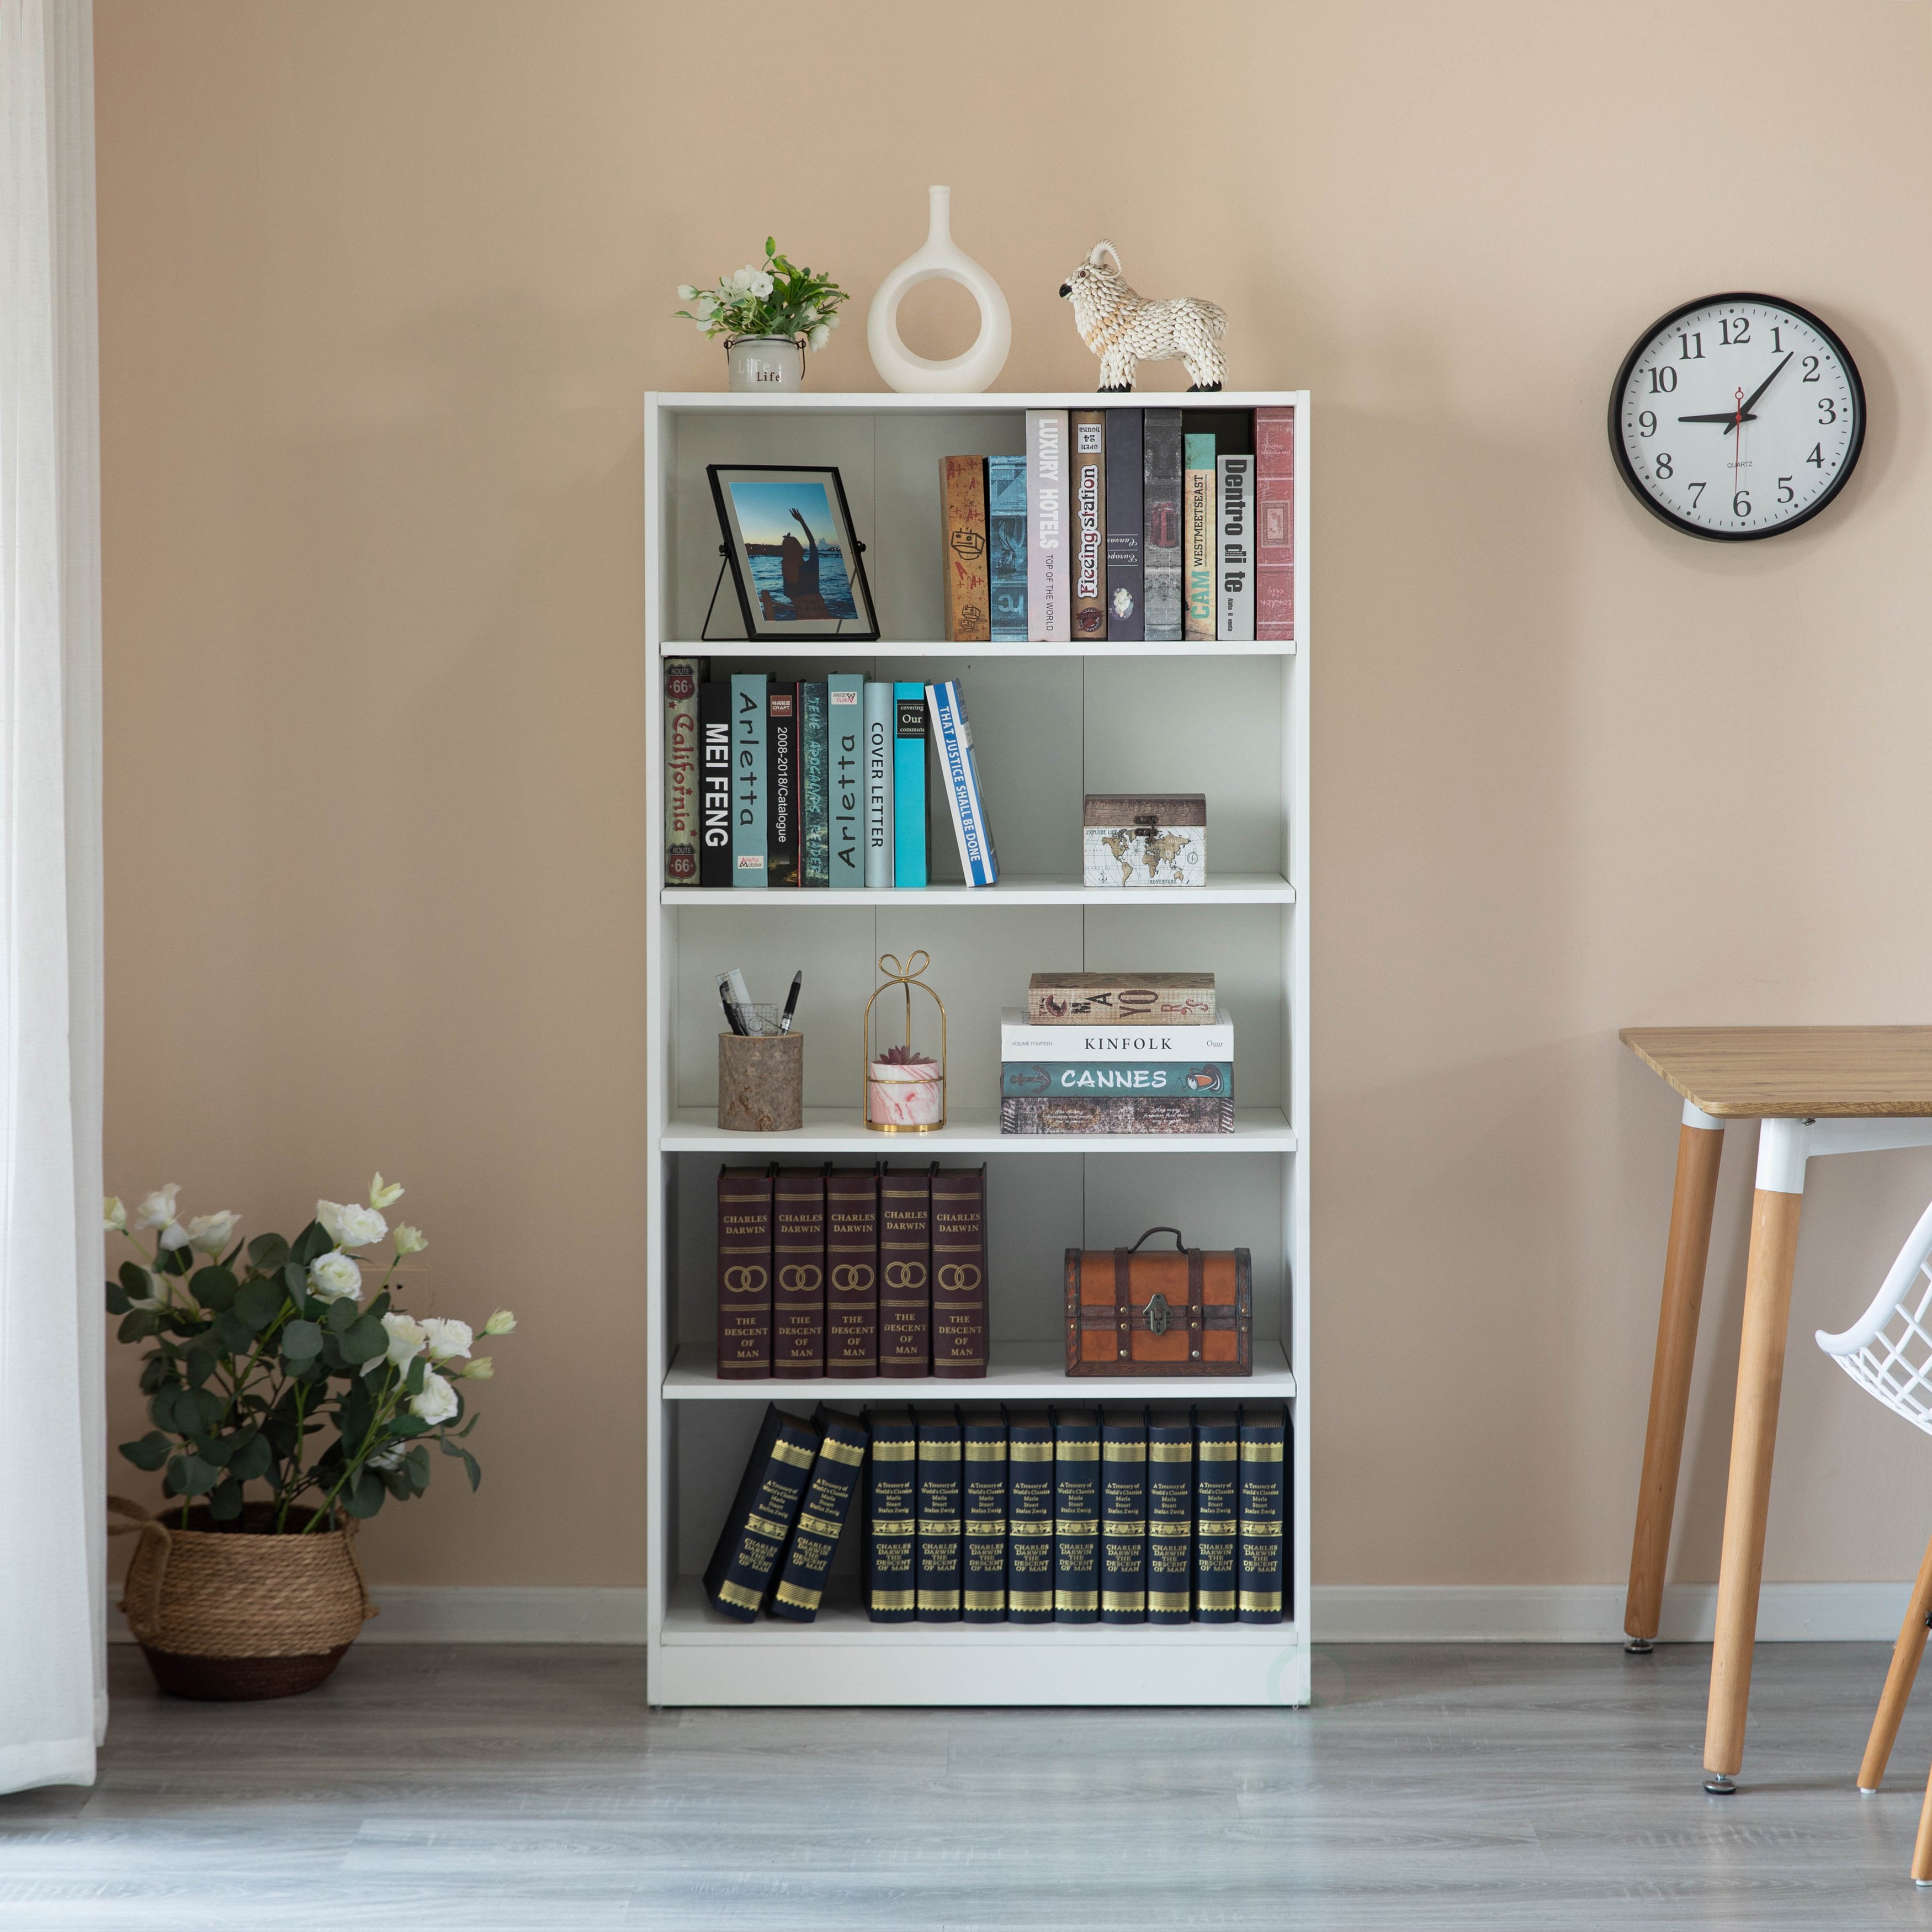 Freestanding Classic Wooden Display Bookshelf, Floor Standing Bookcase, With 5 Open Display Shelves - Brown